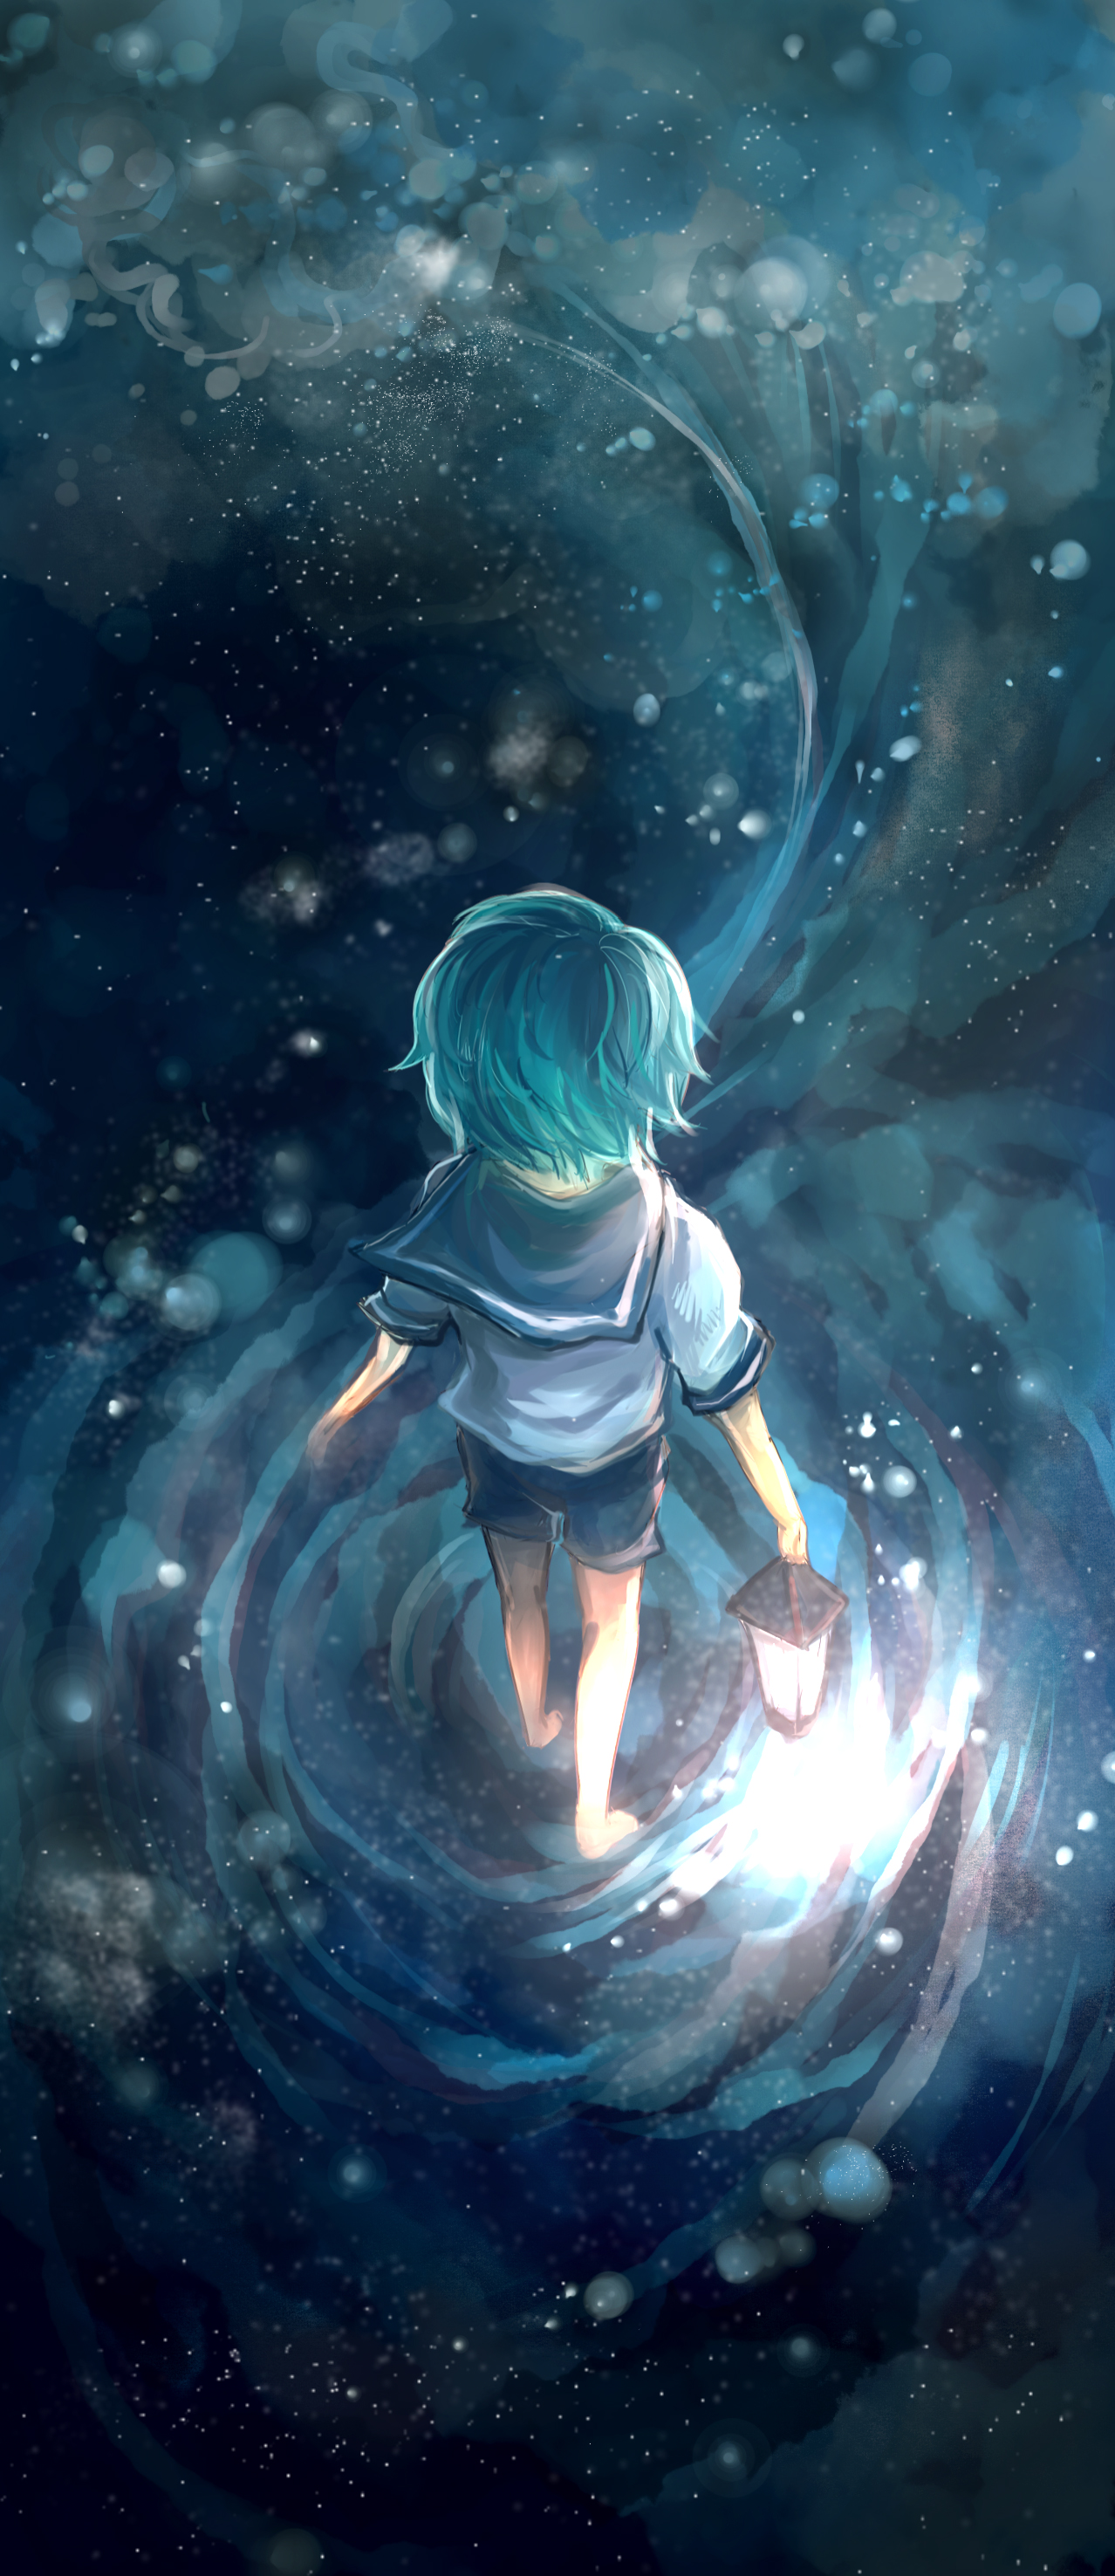 Фото Мальчик с фонарем в руке стоит на поверхности воды, в которой отражается звездное небо